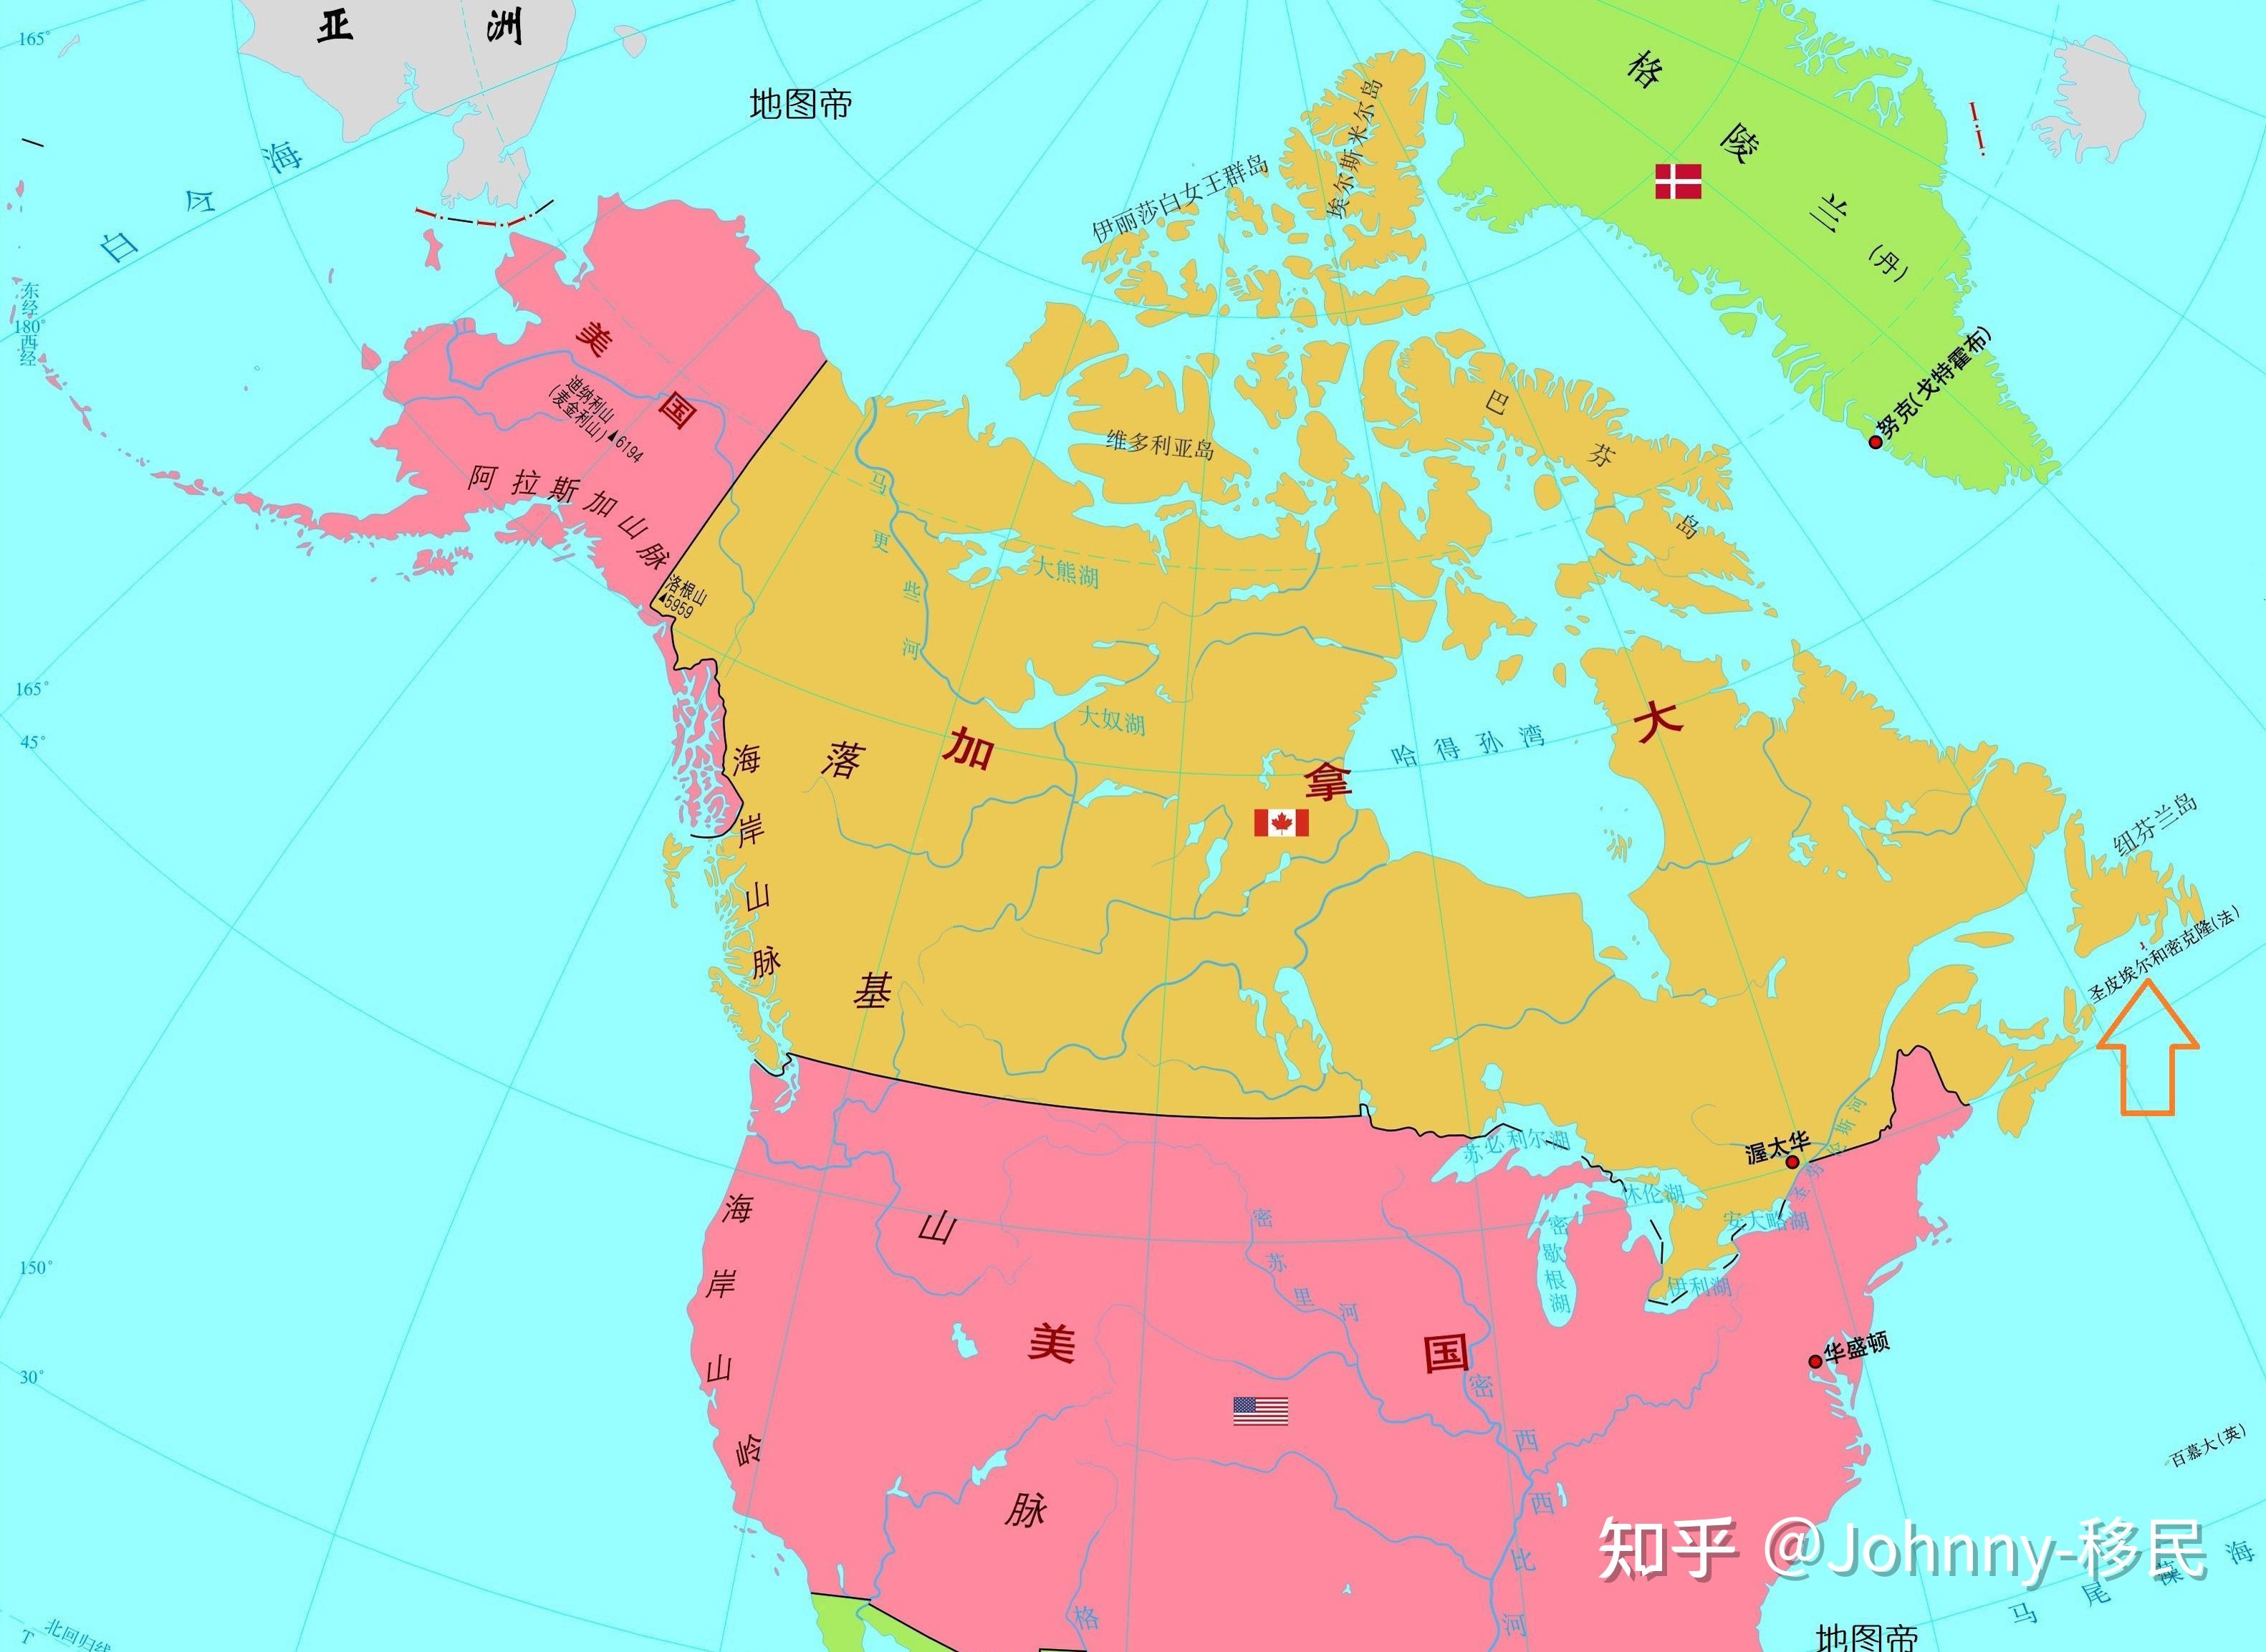 首先我们来看一下这个国家的地理位置,加拿大位于哪里呢?